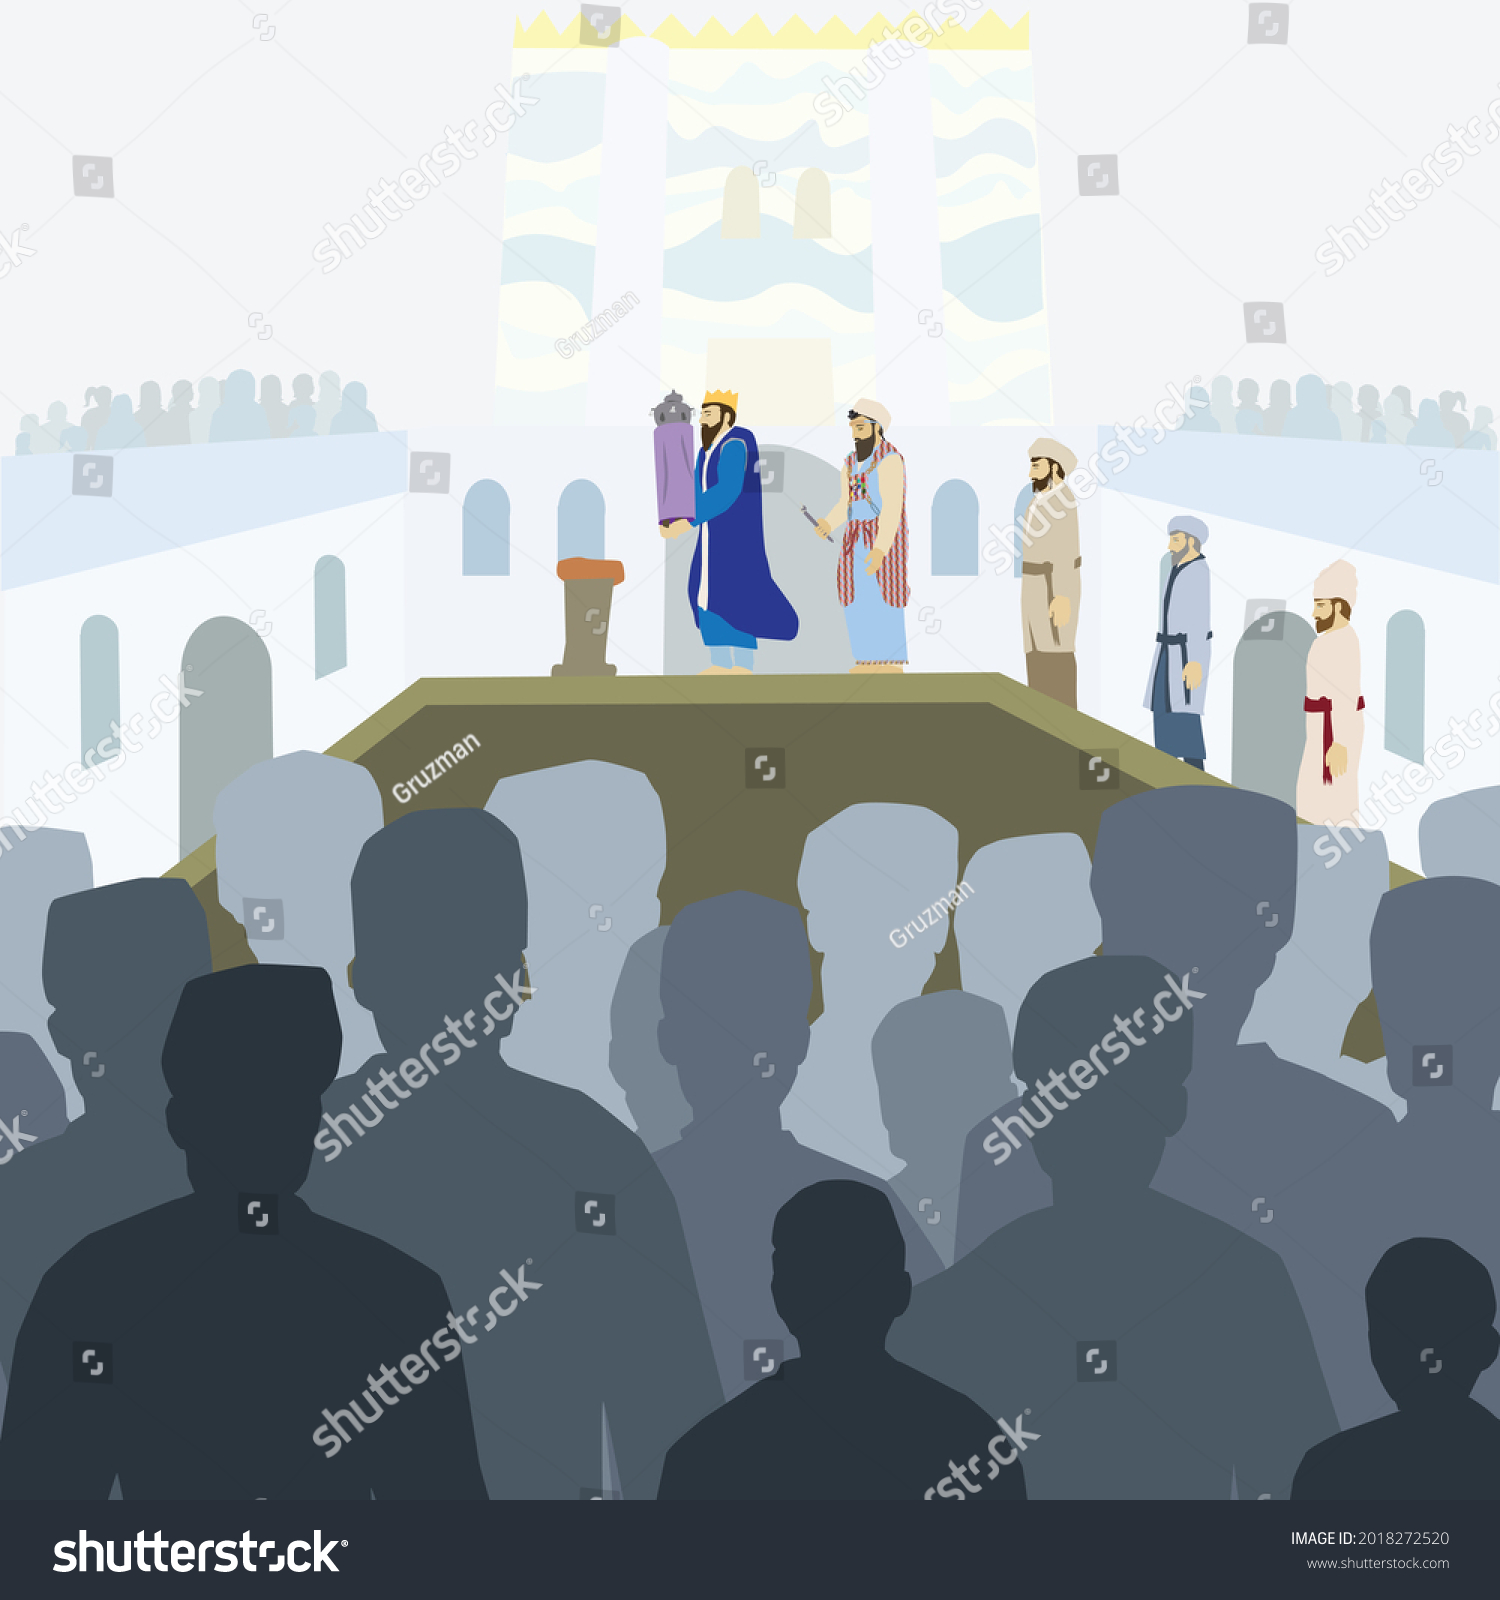 איור ציור וקטורי של טקס מעמד הקהל בסוכות בבית המקדש כהן גדול מלך ישראל קורא בתורה-2018272520.jpg